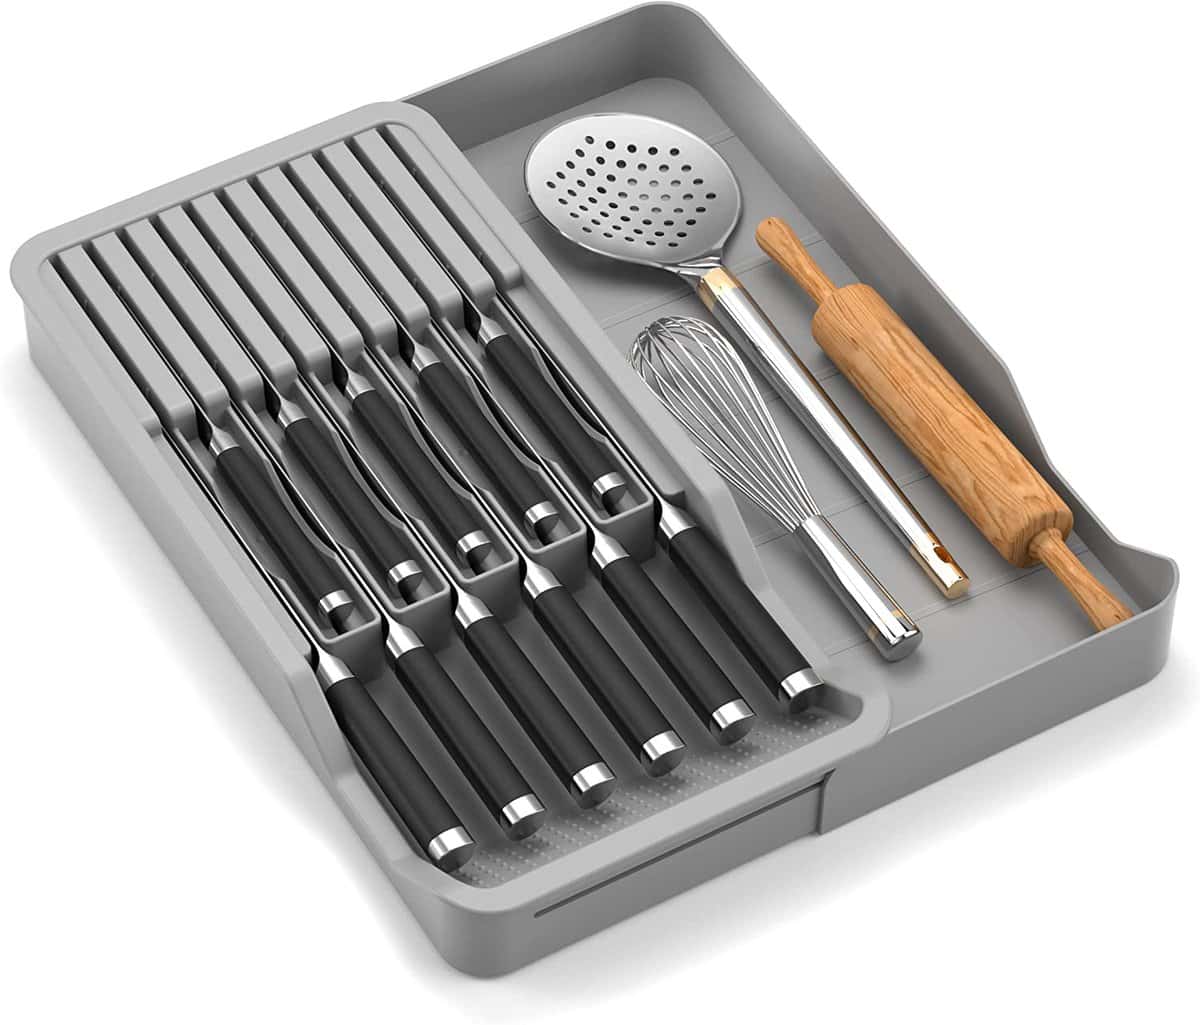 厨房组织理念-在抽屉里存放刀具和其他厨房用具的塑料收纳器。